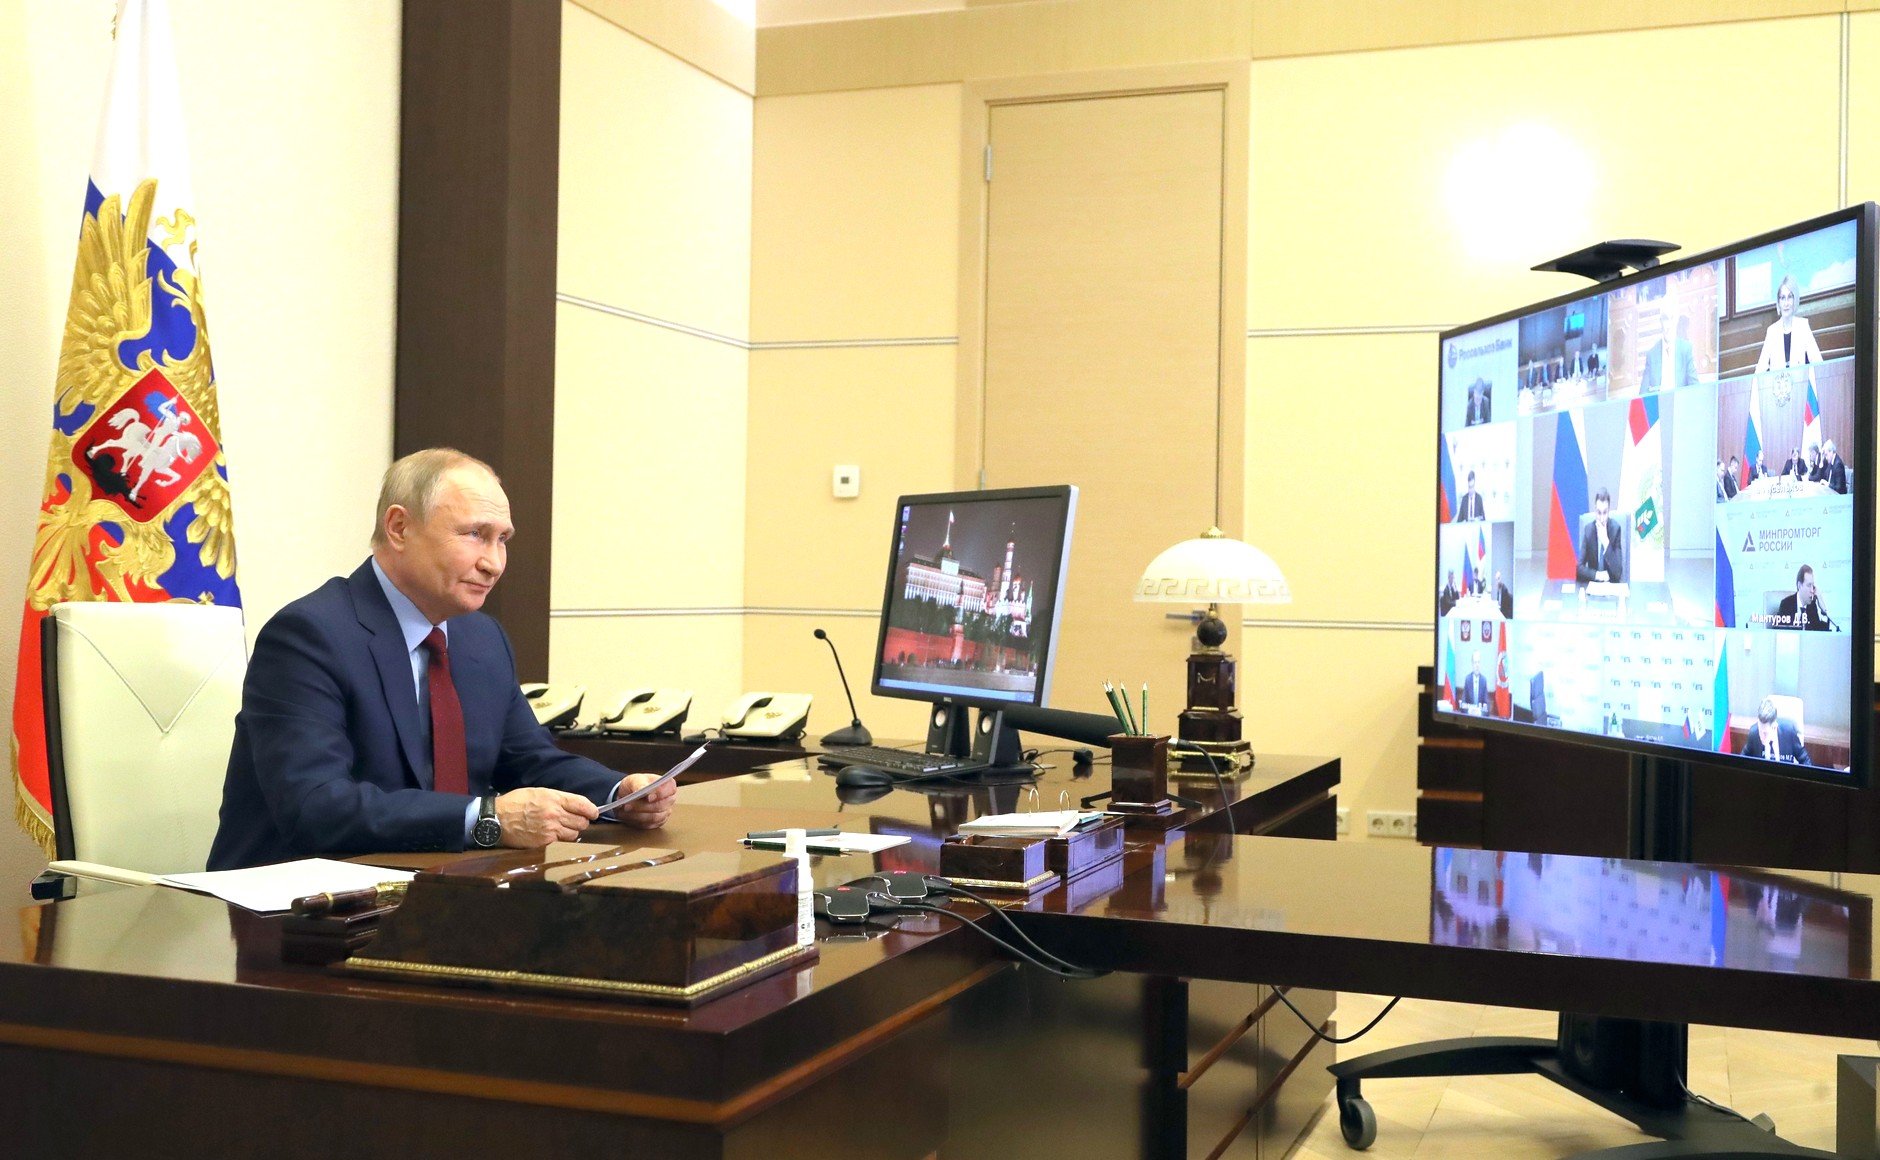 Снимки Путина с похорон Жириновского вызвали вопросы о здоровье президента РФ